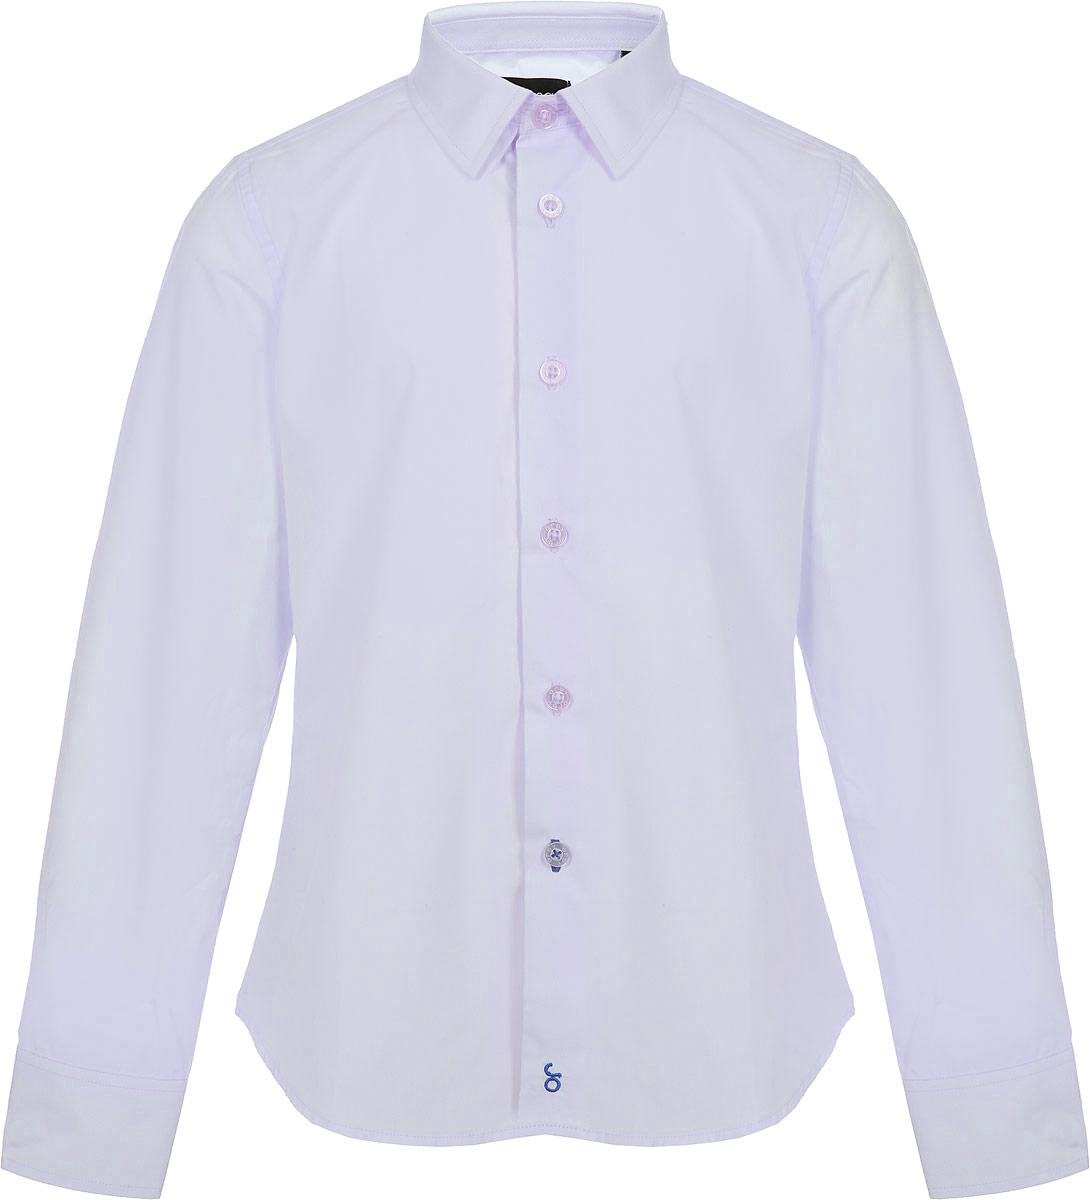 Рубашка для мальчика Orby, цвет: серый. 80453_OLB. Размер 146